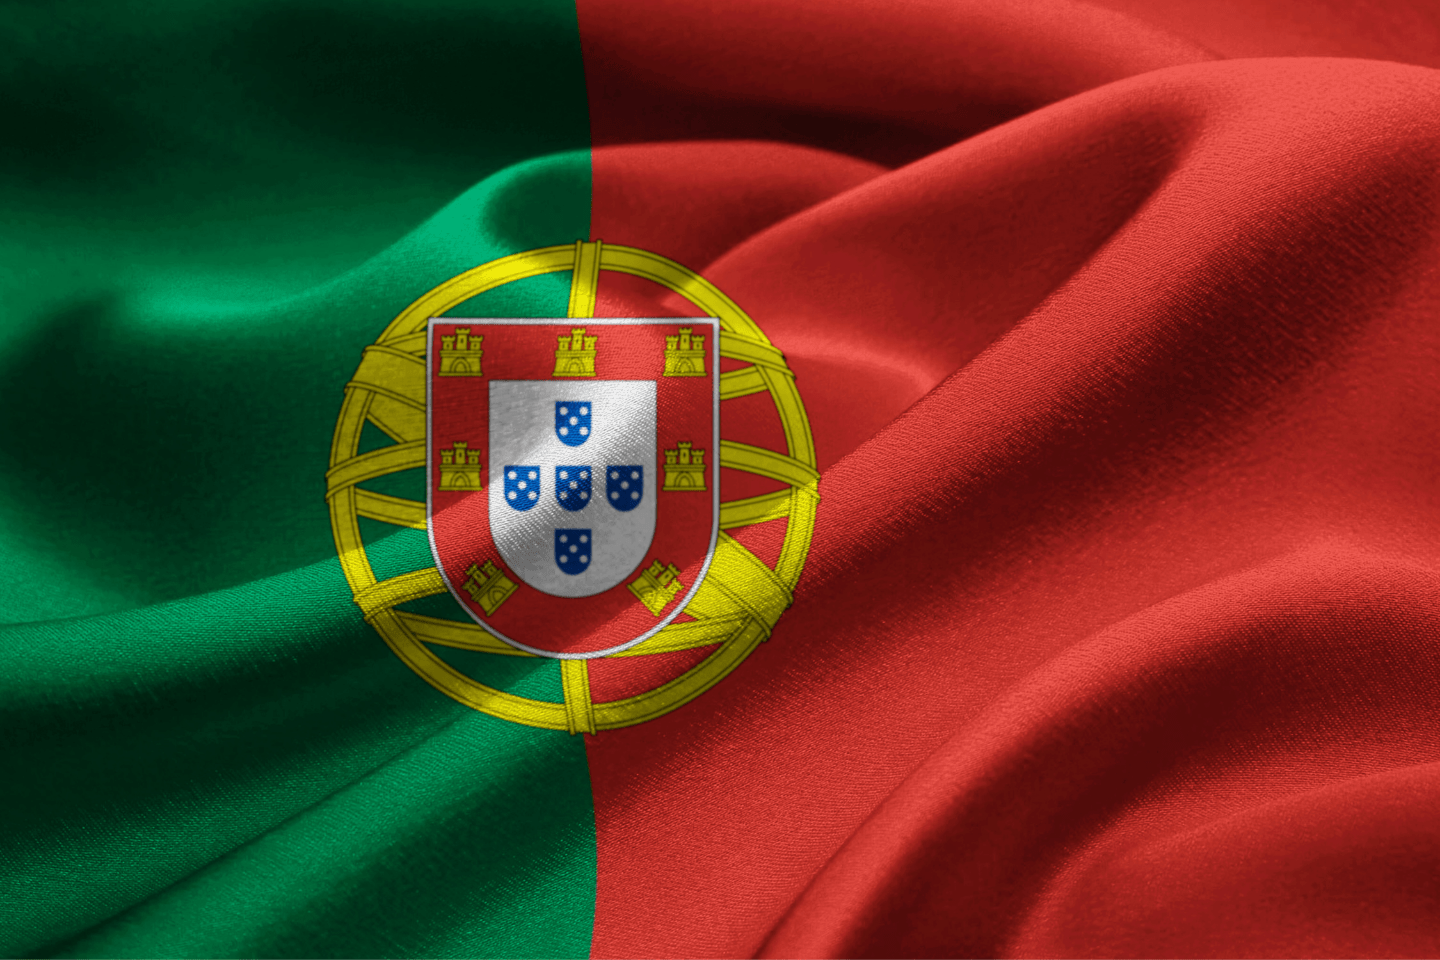 Portugal Golden Visa Programme